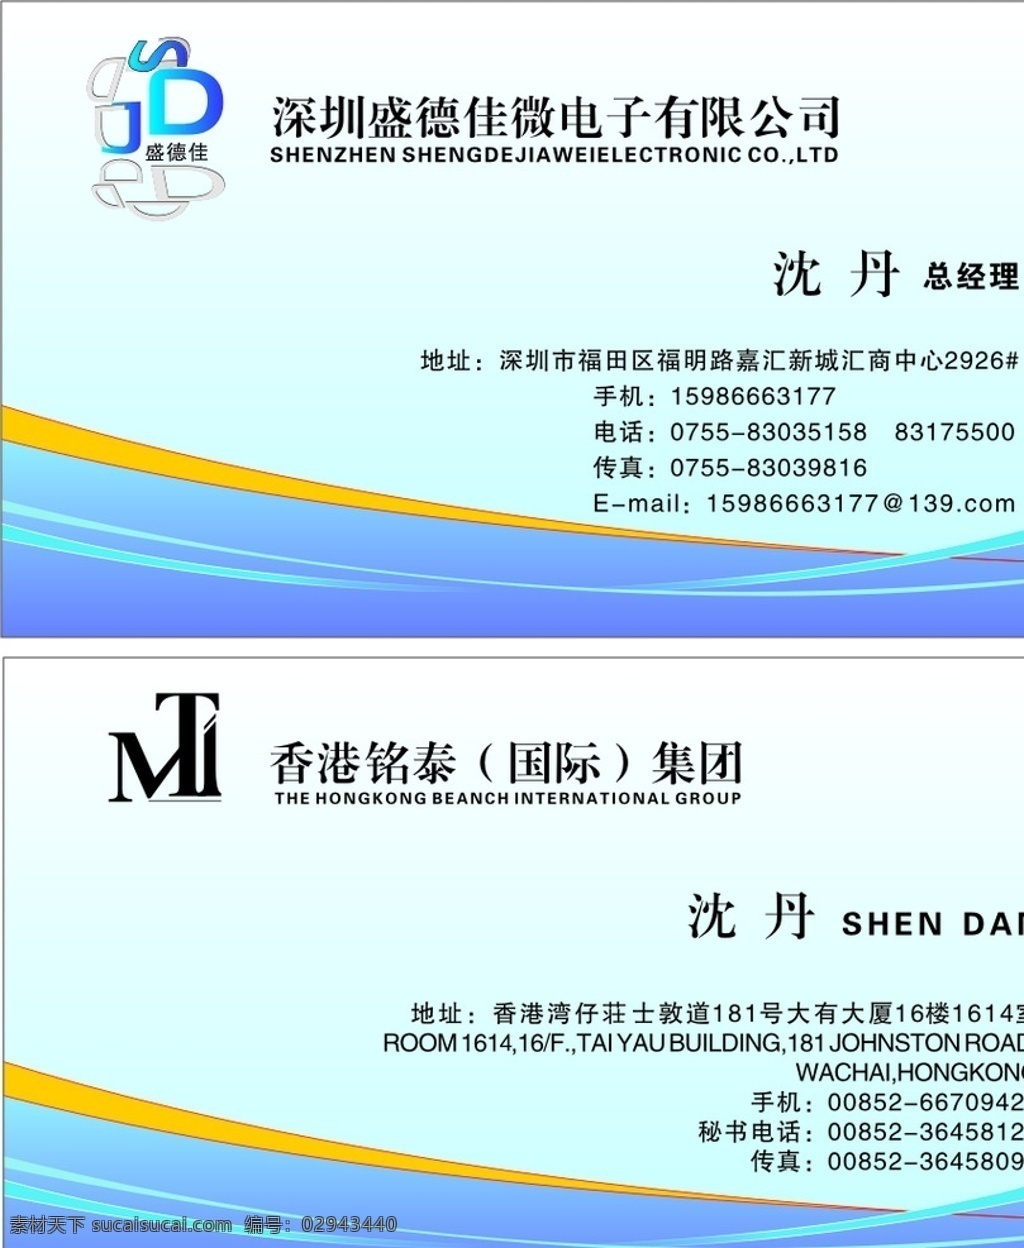 深圳 盛得 佳 微电子 有限公司 电子名片 名片 电子科技 地球 科技名片 名片模版 名片卡片